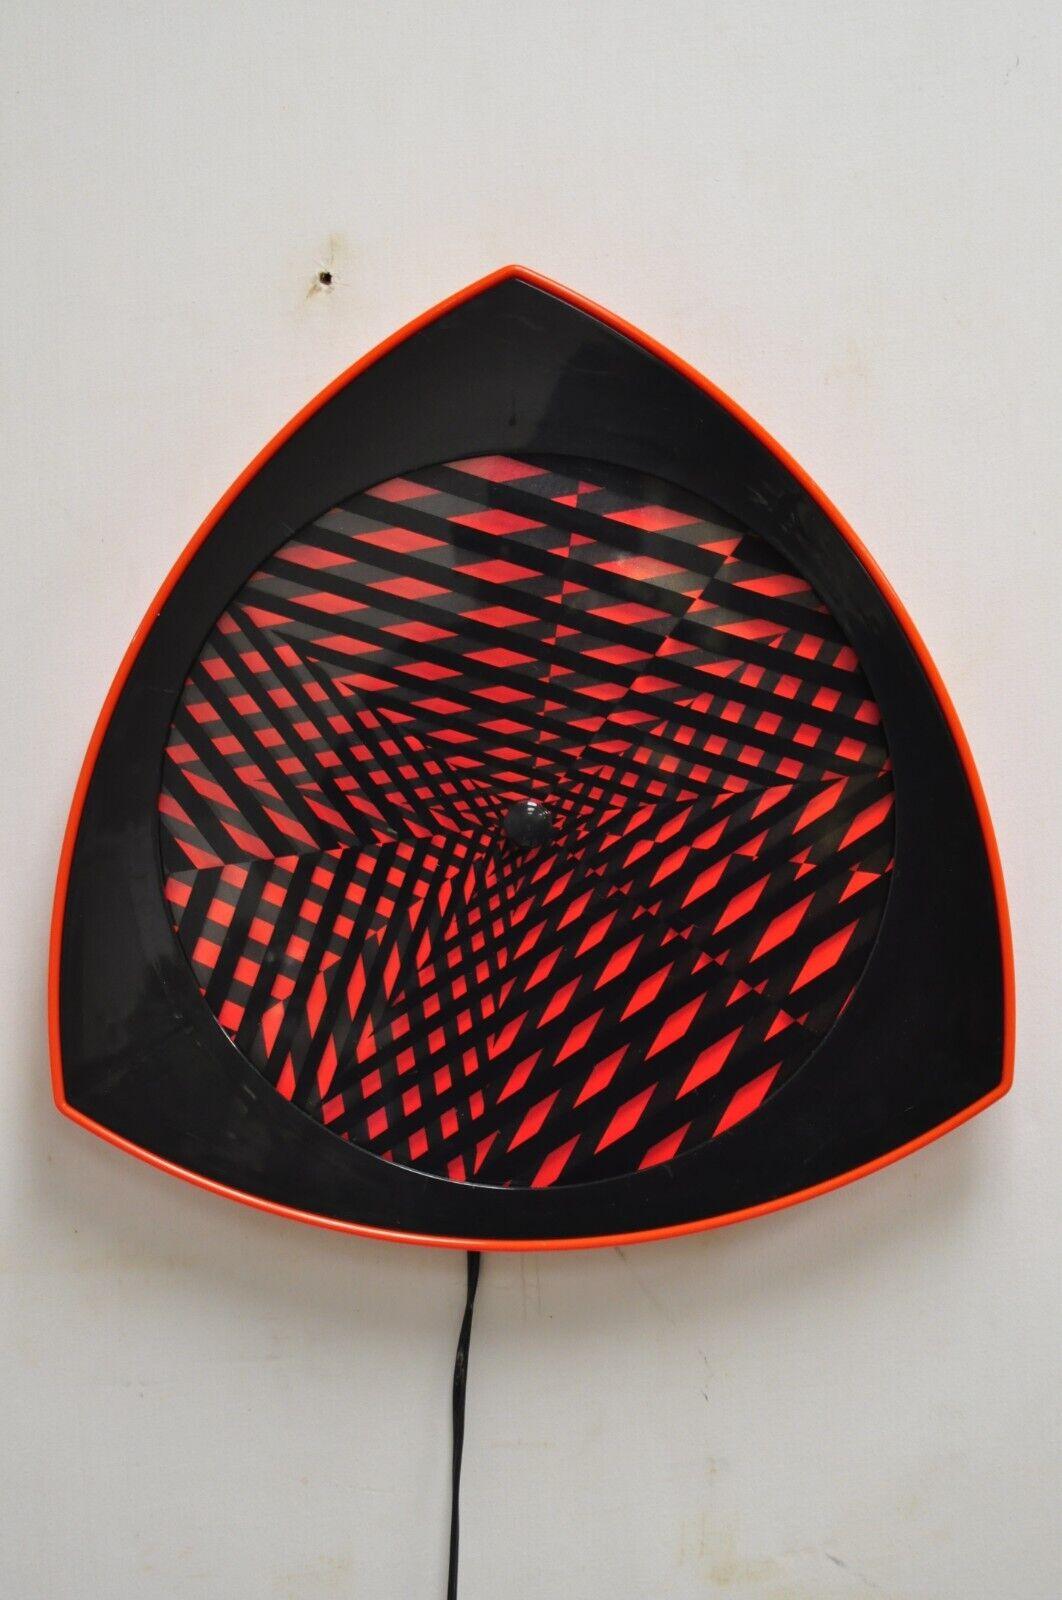 Vintage 1996 Kaninchen Tanaka Lumaseries CyberSpace Red Kinetic Wall Art Sculpture. Der Artikel hat eine einzigartige rotierende Form mit wechselnden optischen geometrischen psychedelischen Mustern, Originalstempel, sehr schöner Vintage-Artikel.